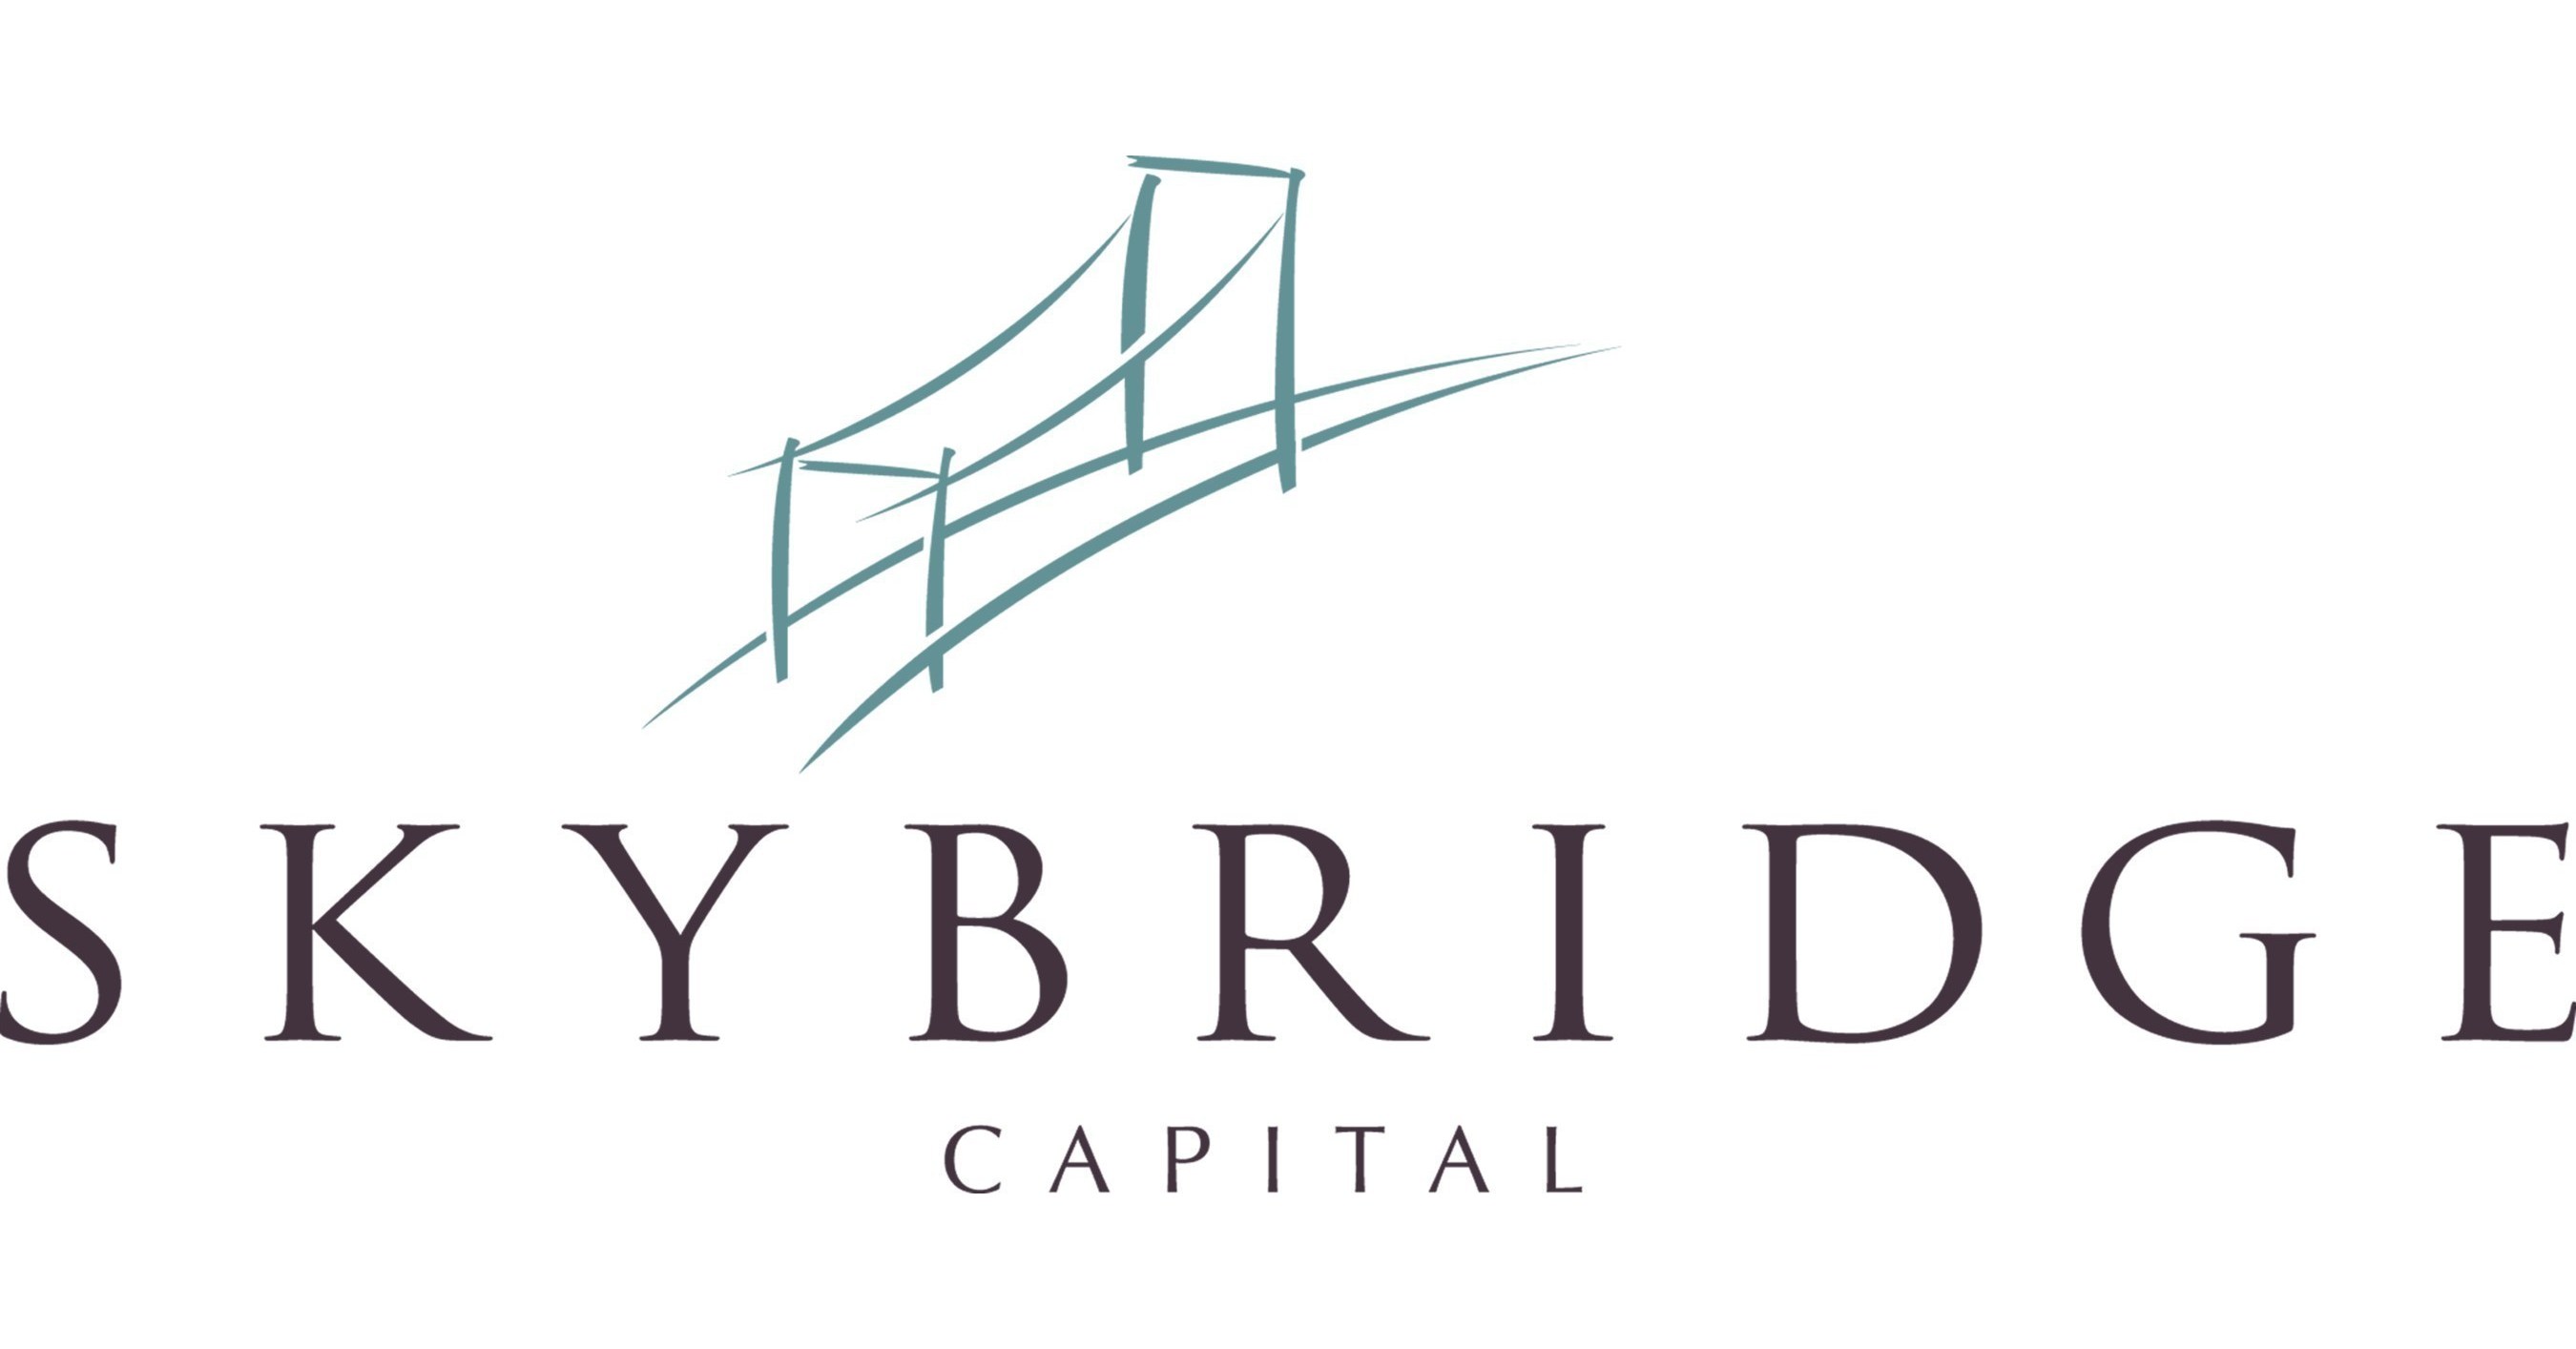 买买买！美国对冲基金 Skybridge 已向比特币投资 1.82 亿美元